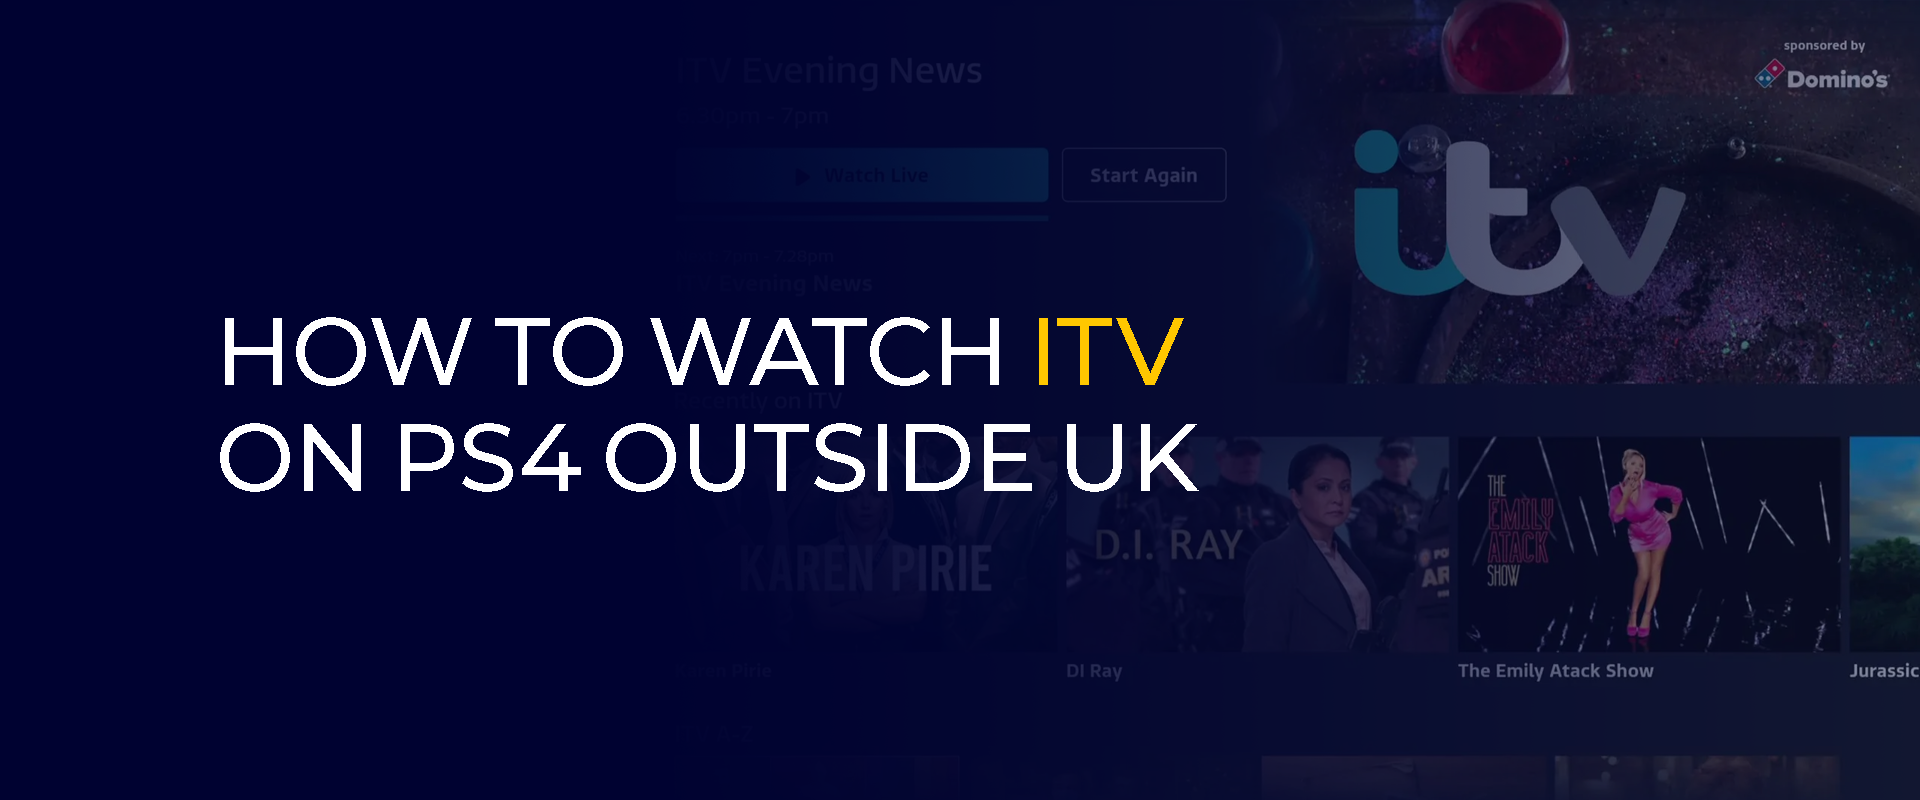 Comment regarder ITV sur PS4 en dehors du Royaume-Uni